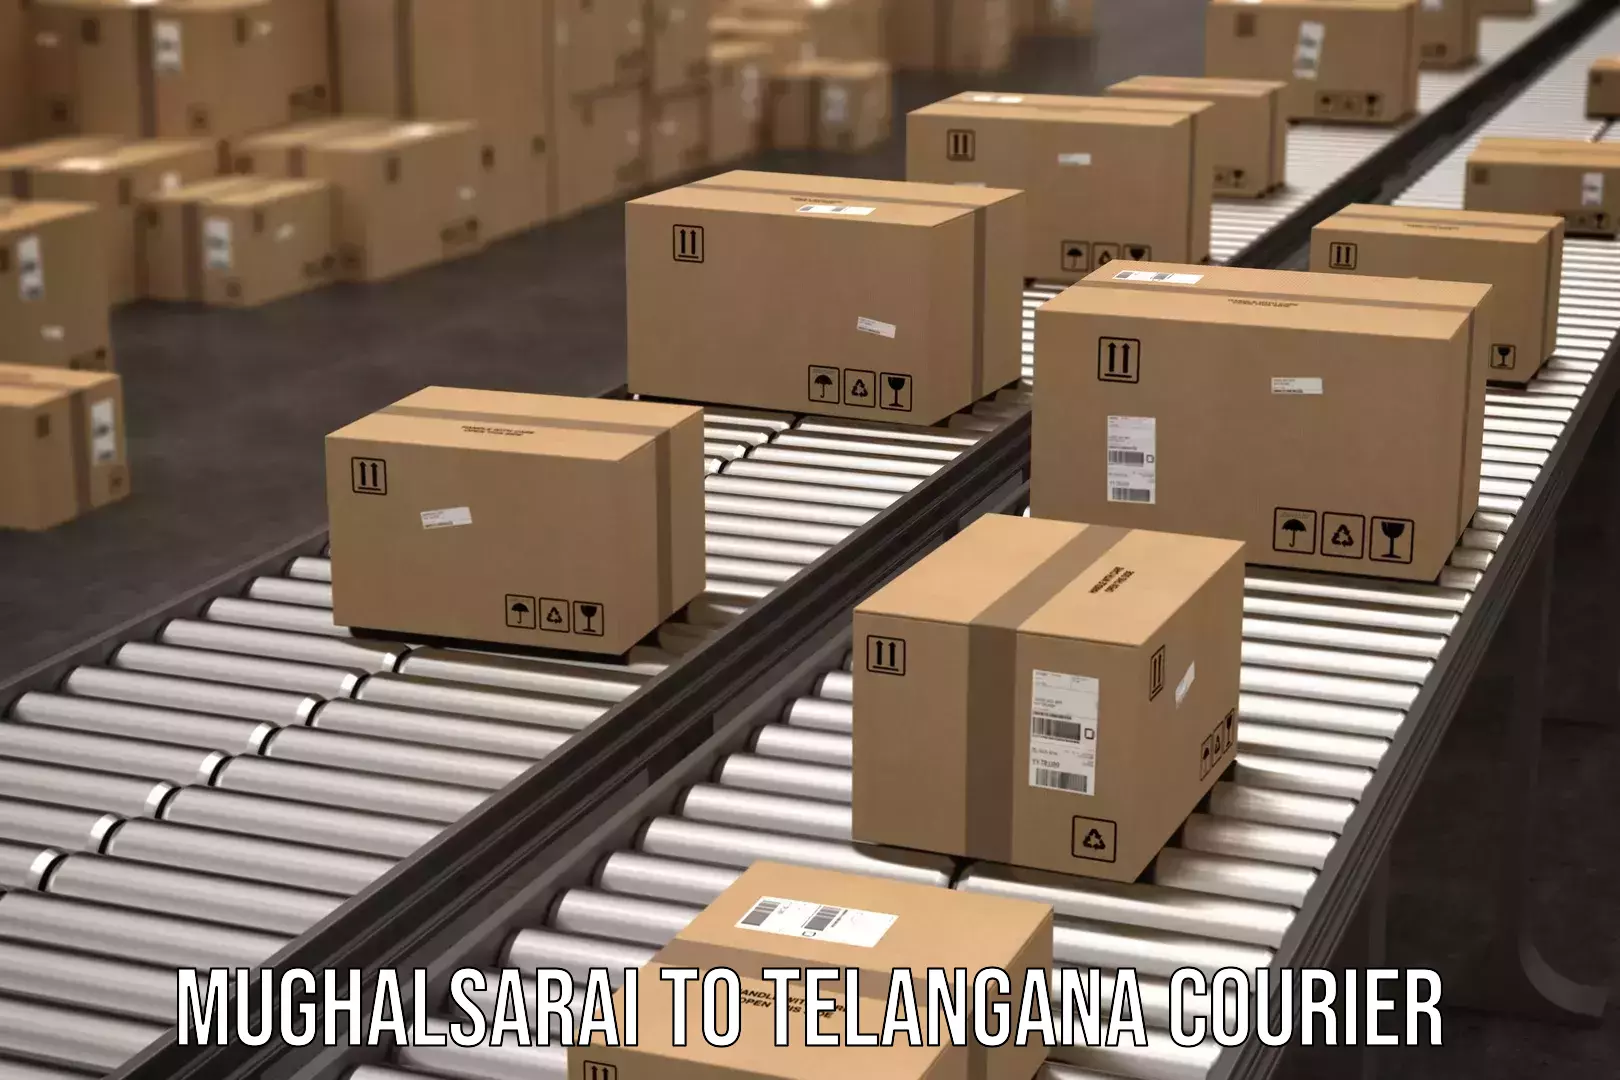 Personal parcel delivery in Mughalsarai to Veenavanka